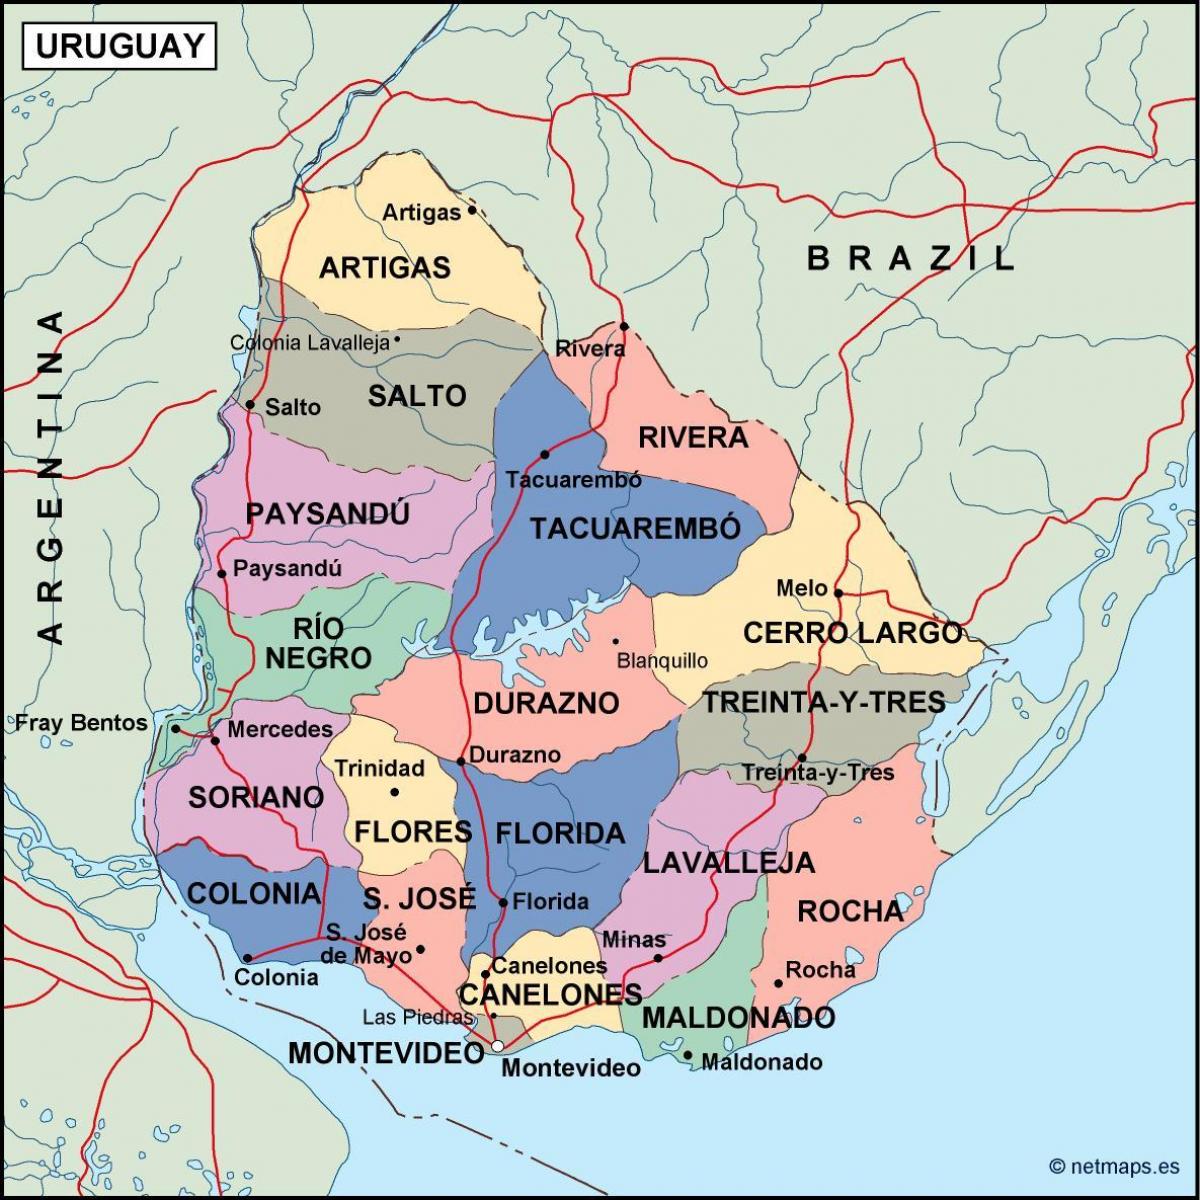 Zemljevid maldonado Urugvaj